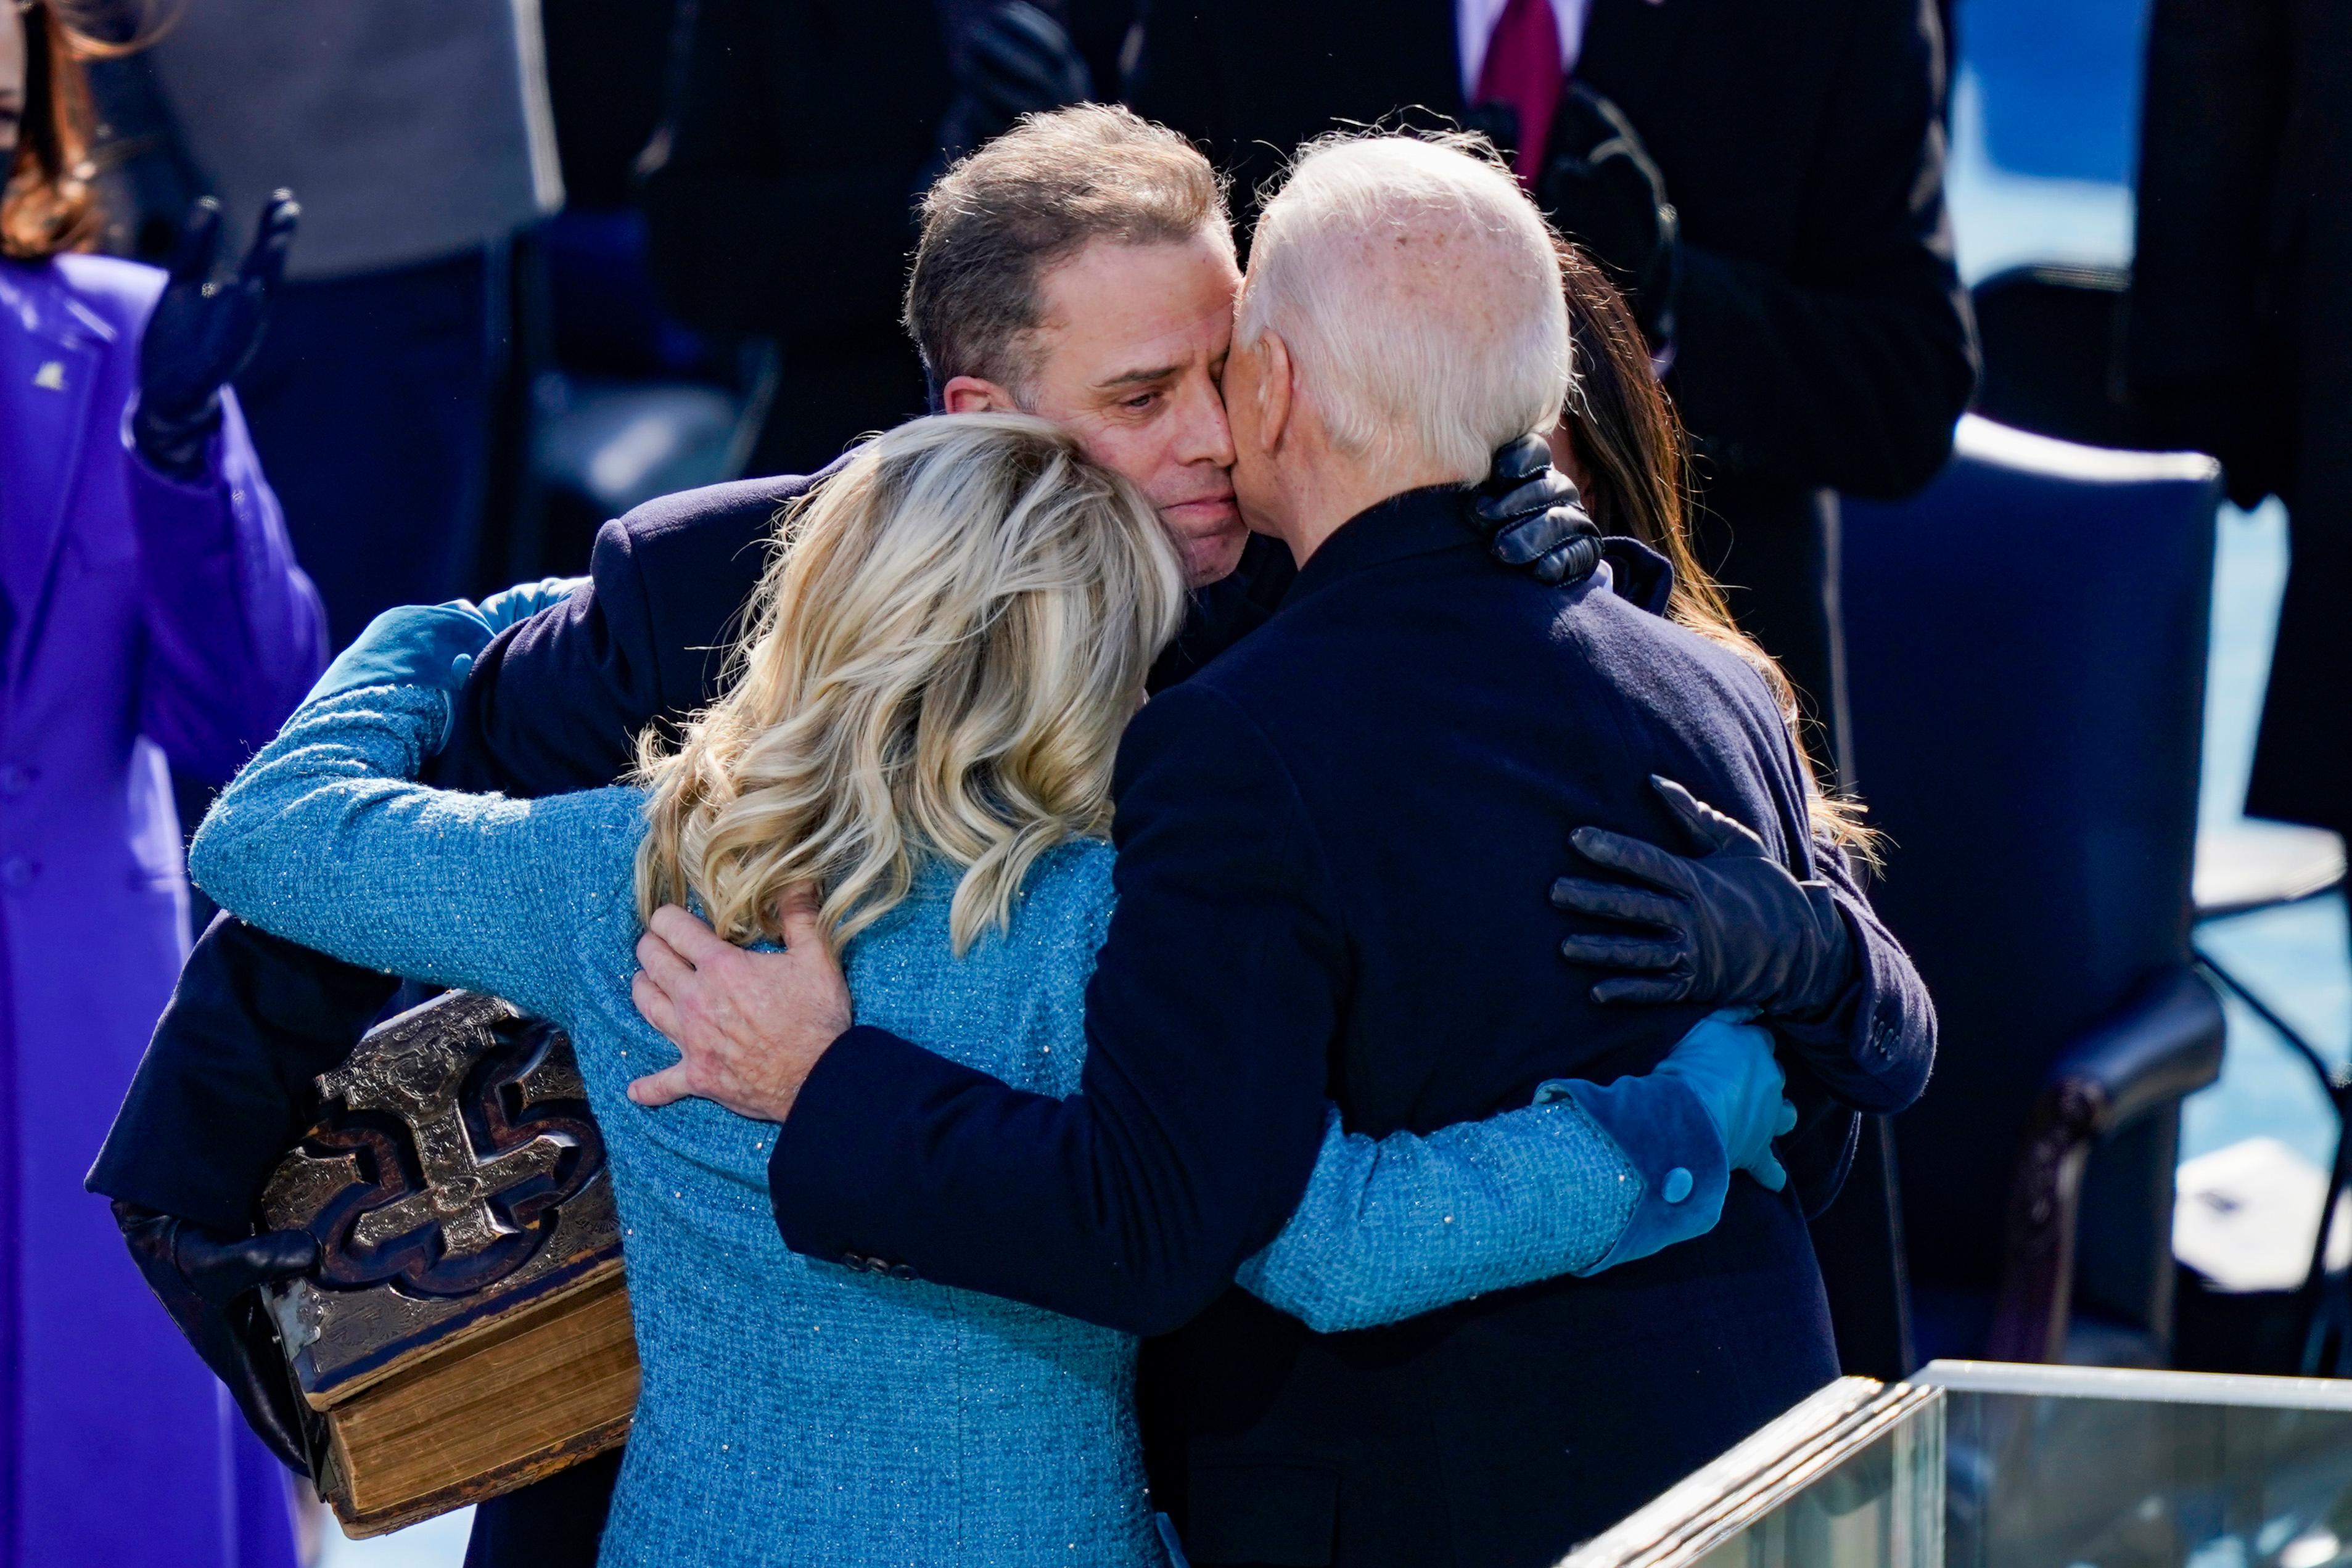 Hunter Biden hugging Jill and Joe Biden at Inauguration Ceremony